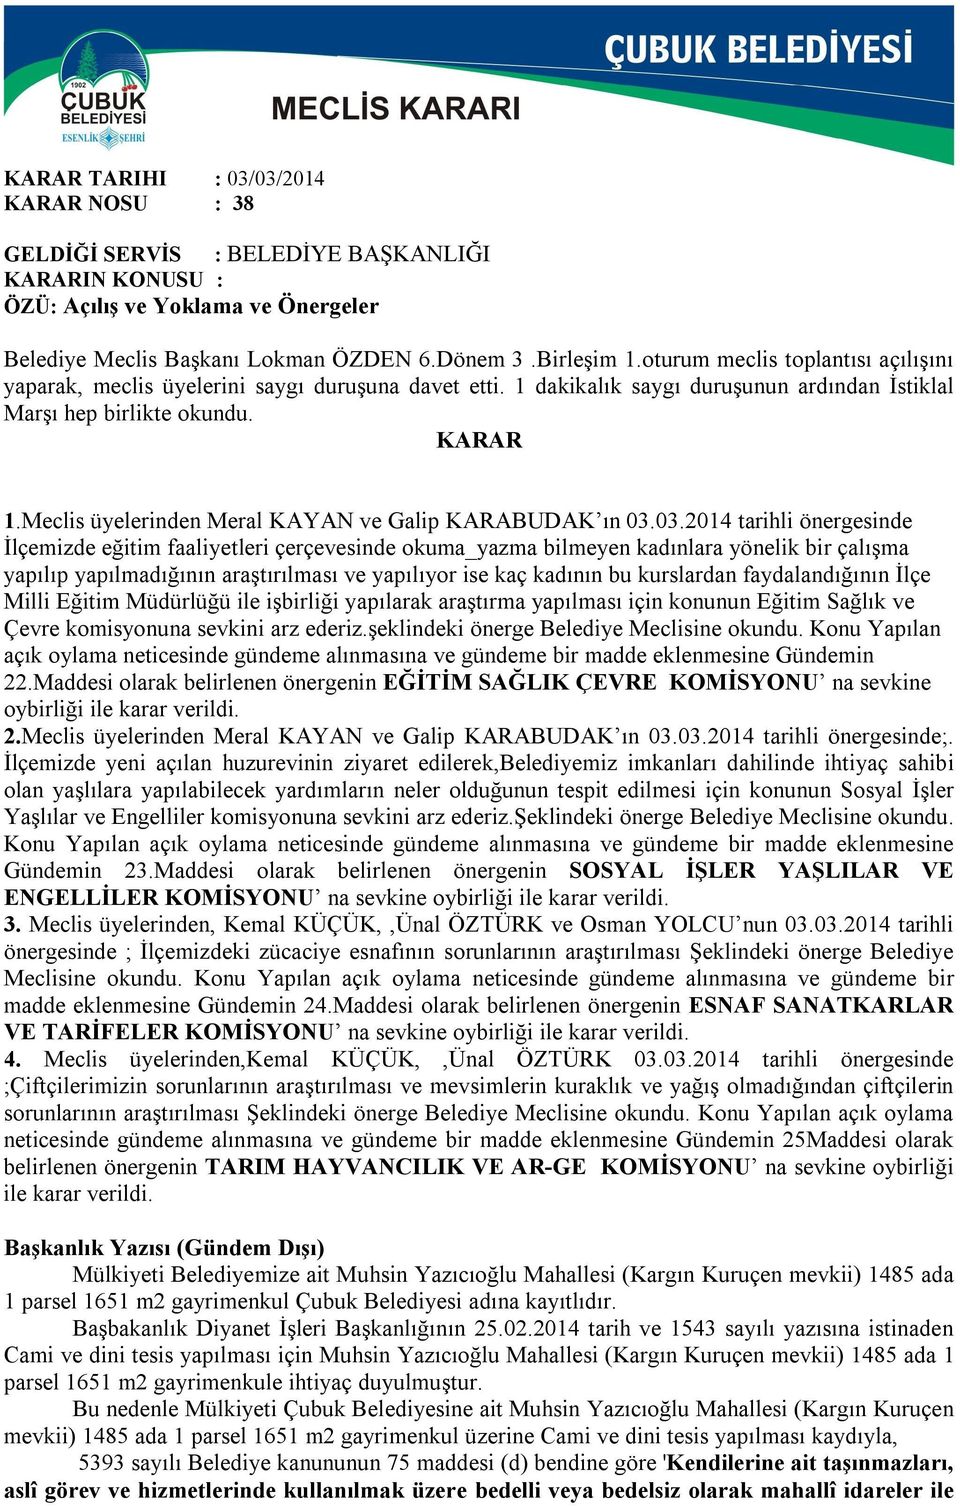 Meclis üyelerinden Meral KAYAN ve Galip KARABUDAK ın 03.